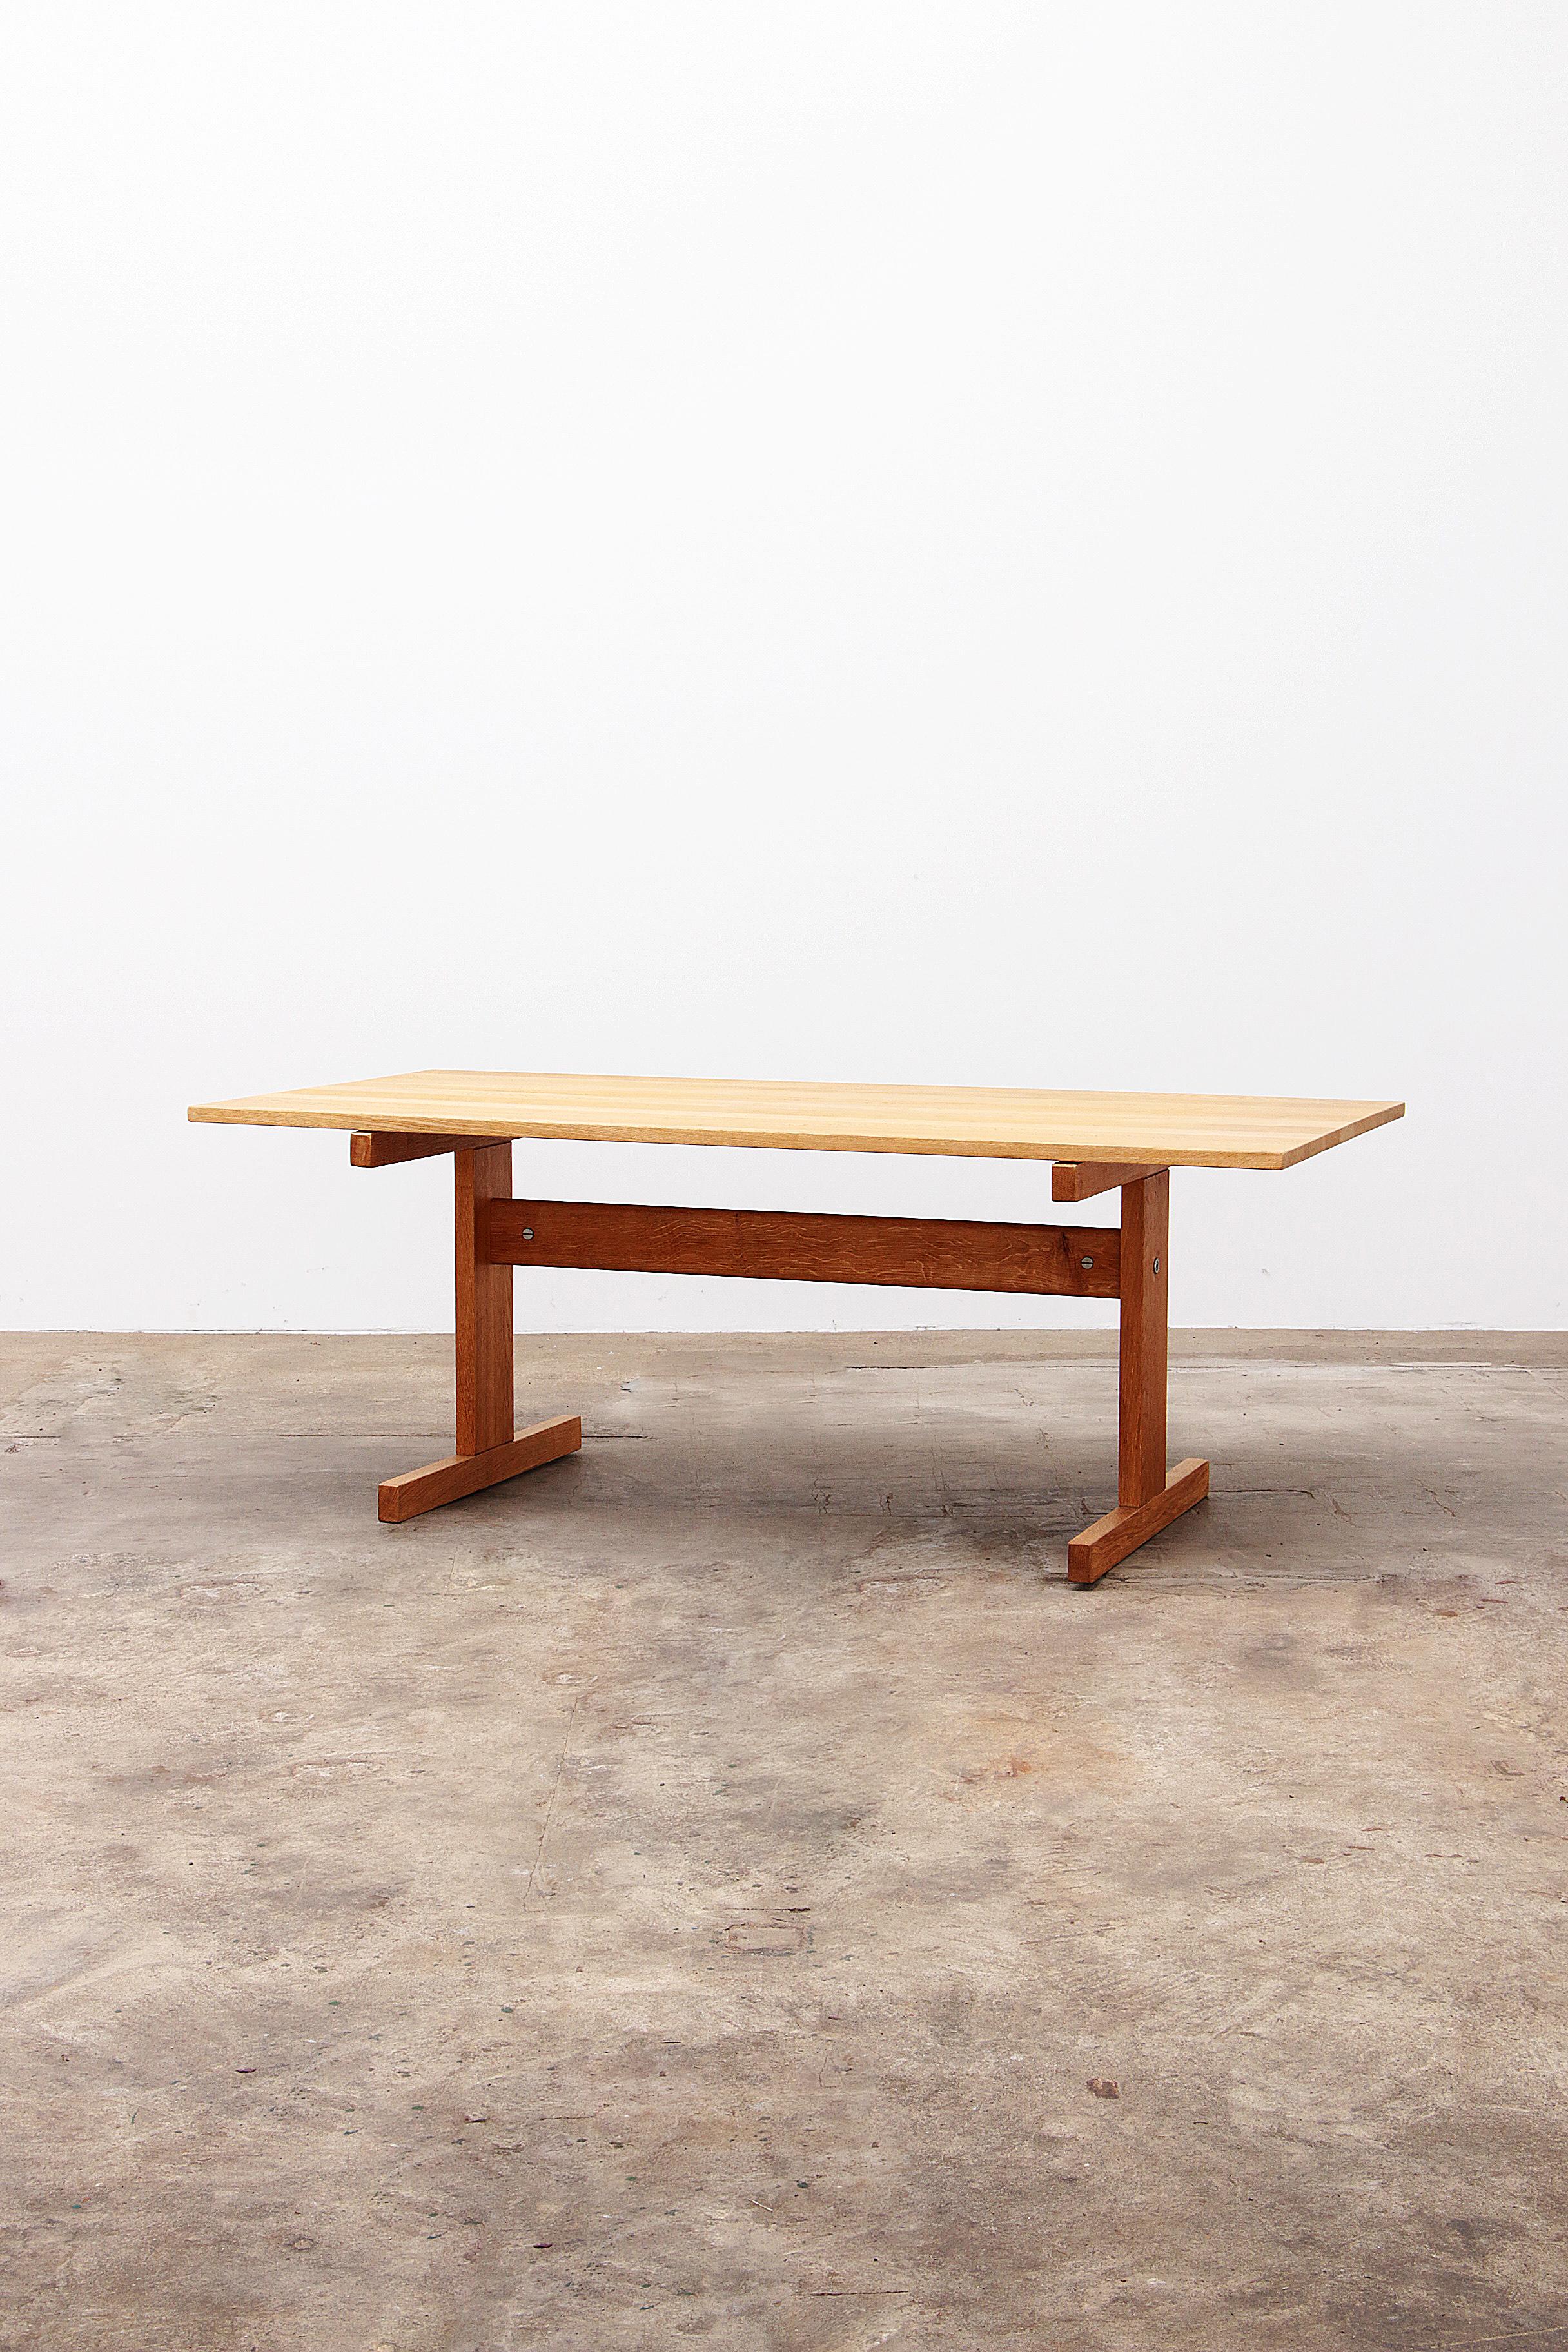 Table de salle à manger en chêne danois Hans J. Wegner pour Andreas Tuck, années 1960.

Cette table de salle à manger minimaliste danoise en chêne clair a été conçue par Hans J. Wegner dans les années 1960. Hans J. Wegner est l'un des grands Danois